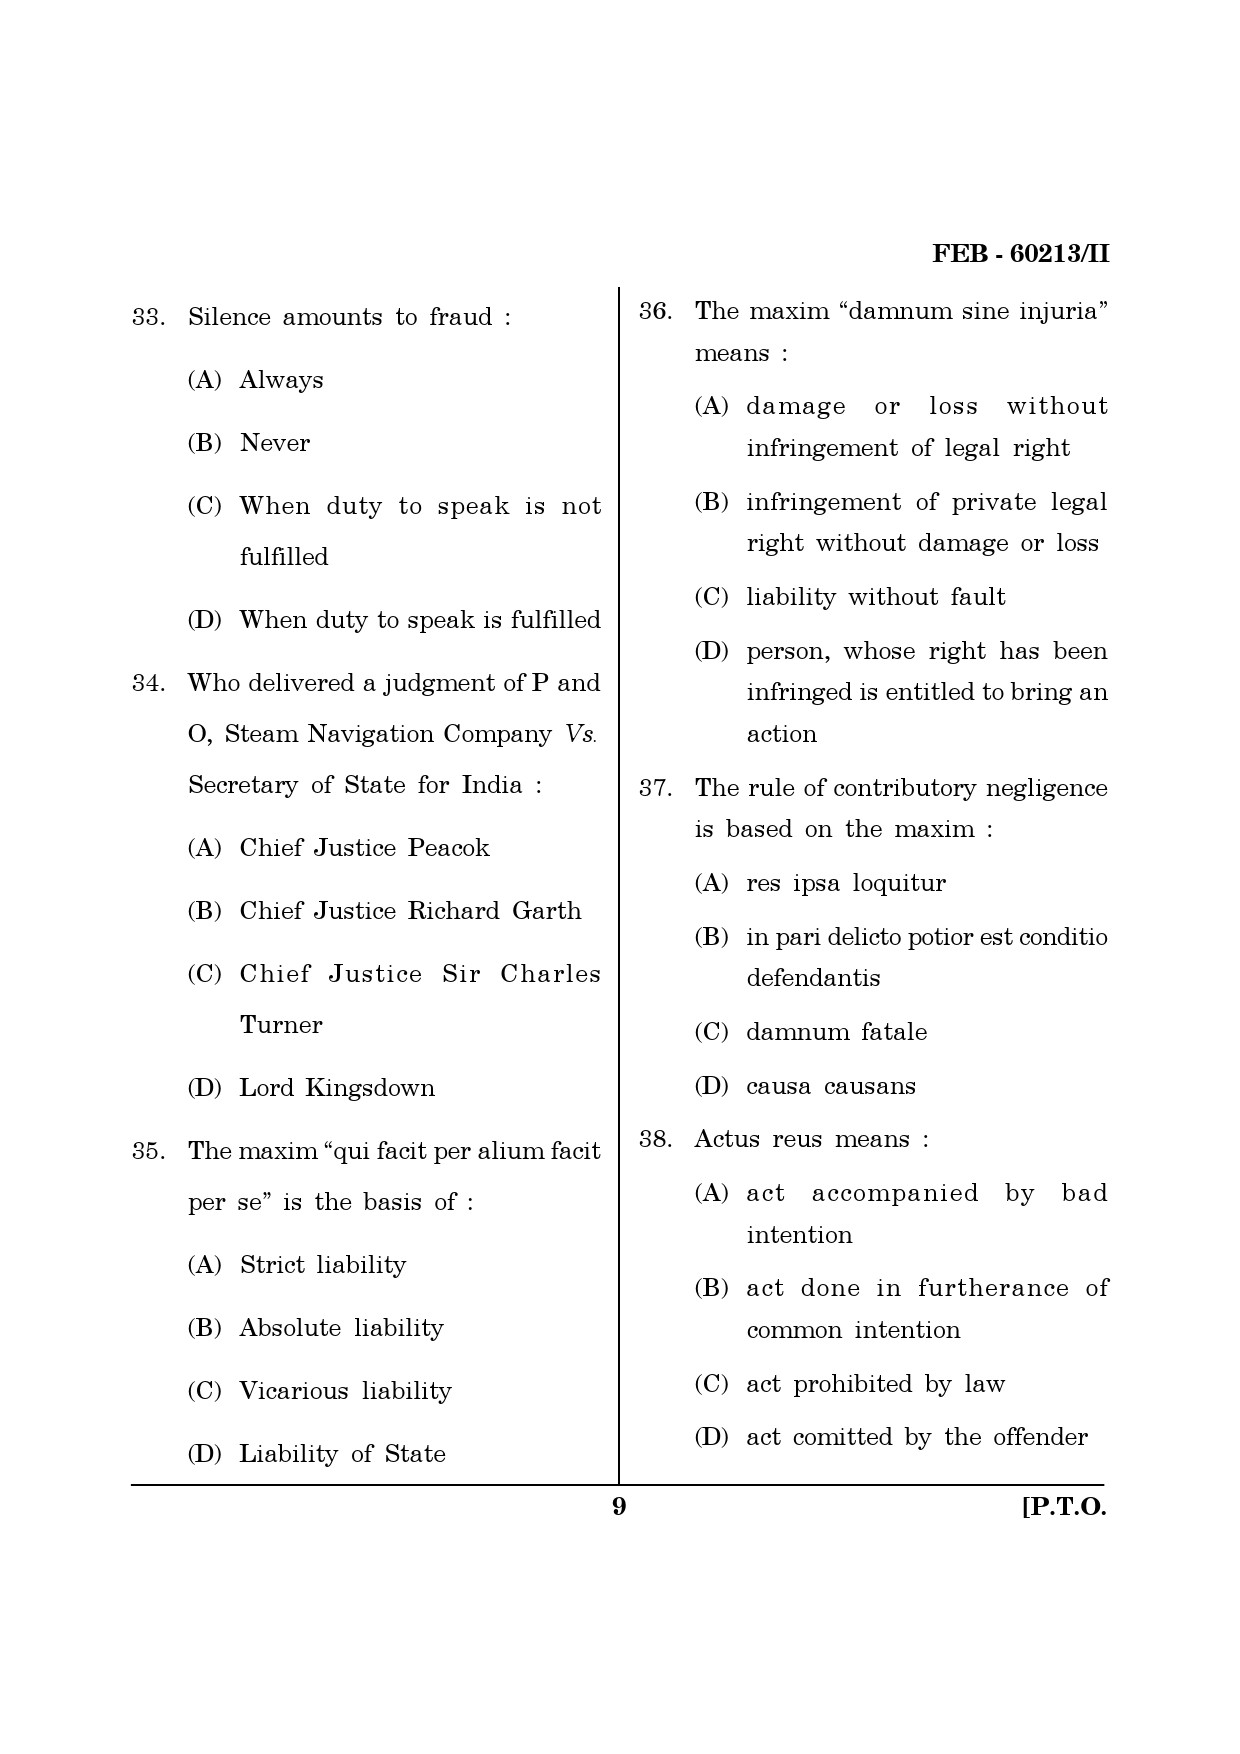 Maharashtra SET Law Question Paper II February 2013 9